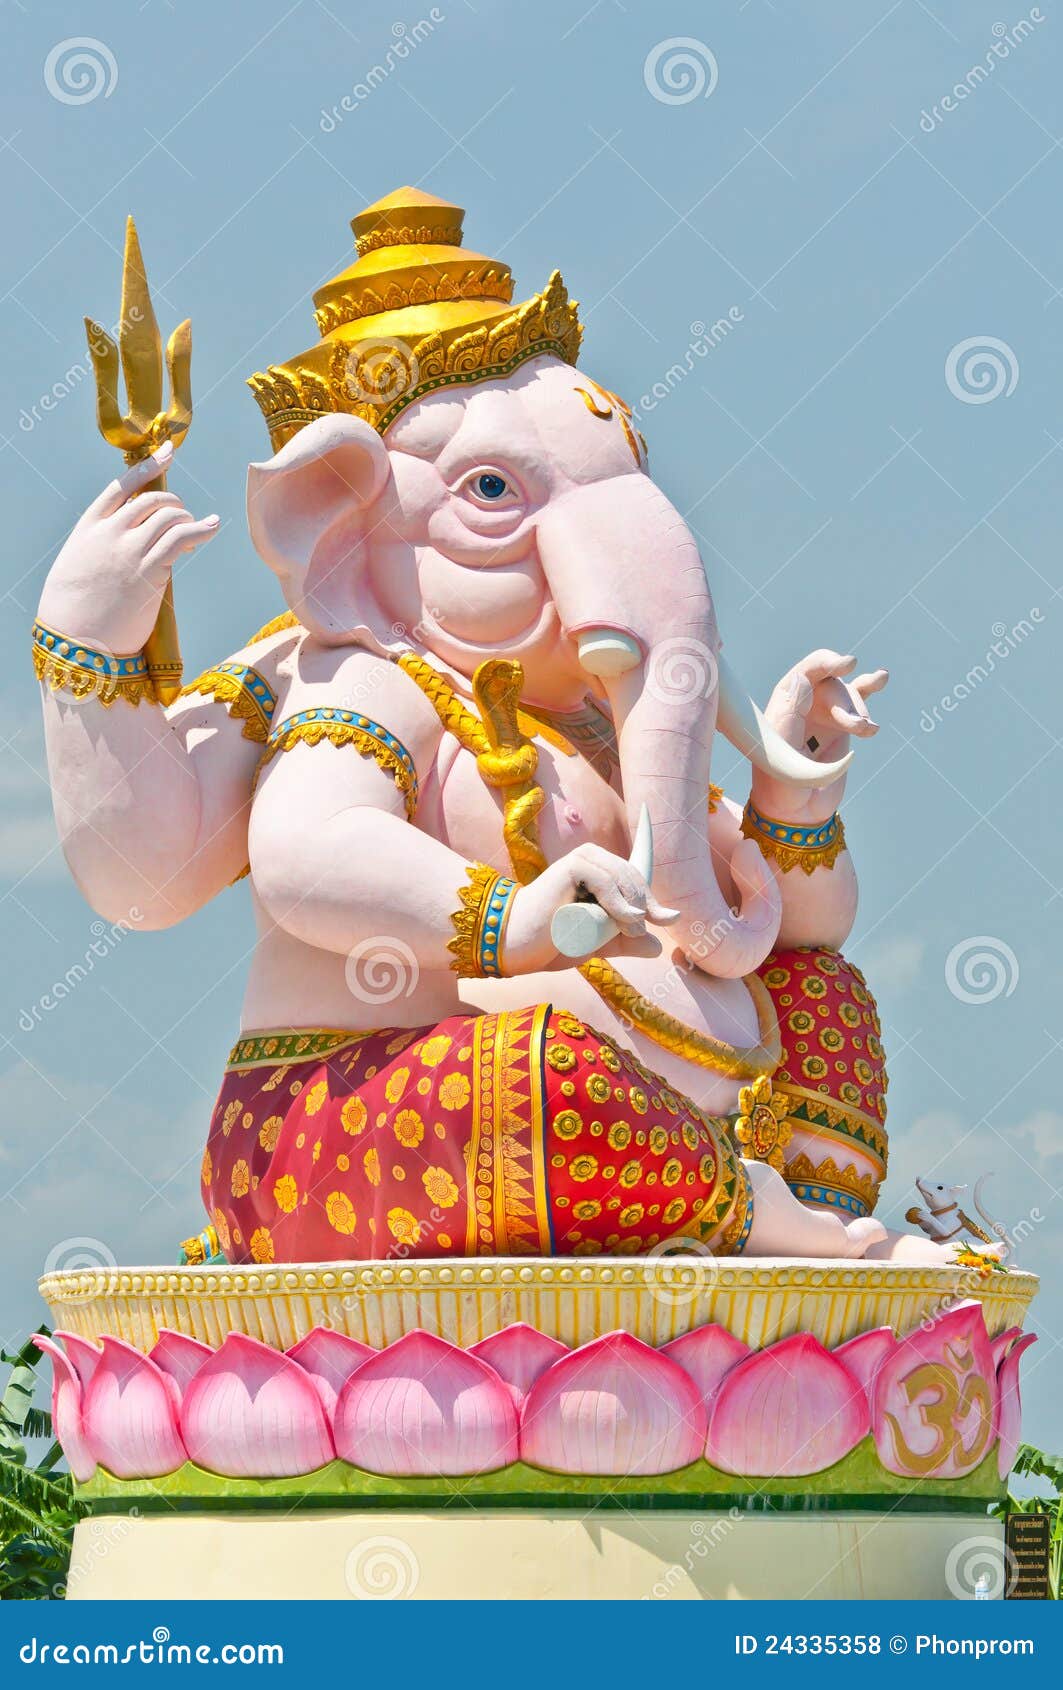 Big pink Ganesha statue, God of commerce.